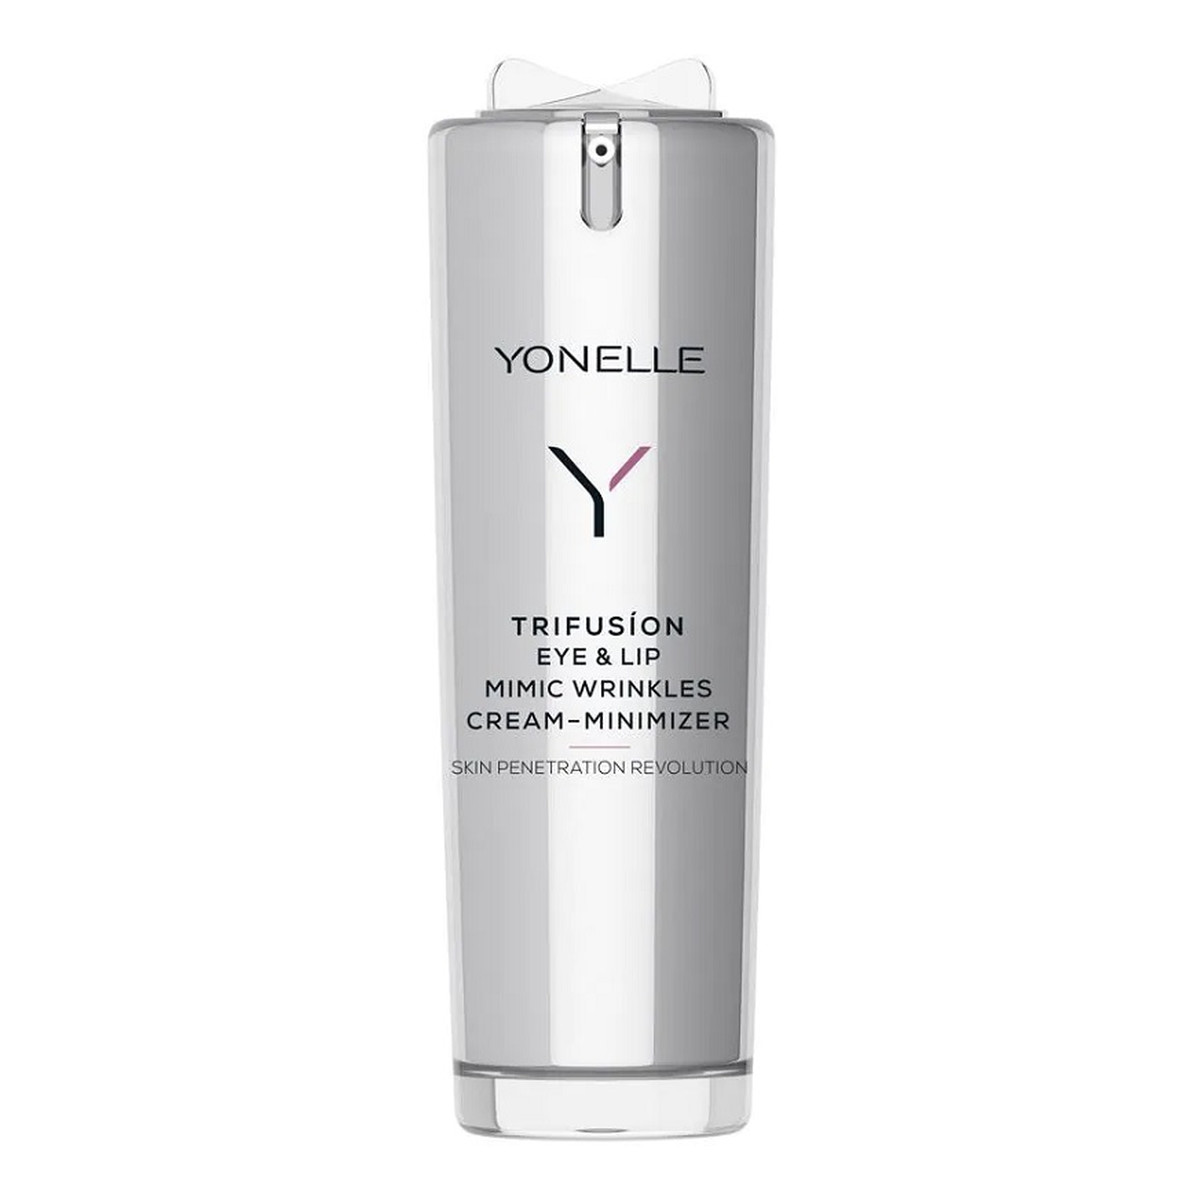 Yonelle Trifusion Eye & Lip Mimic Wrinkles Cream-Minimizer reduktor zmarszczek mimicznych w okolicach oczu i ust 15ml